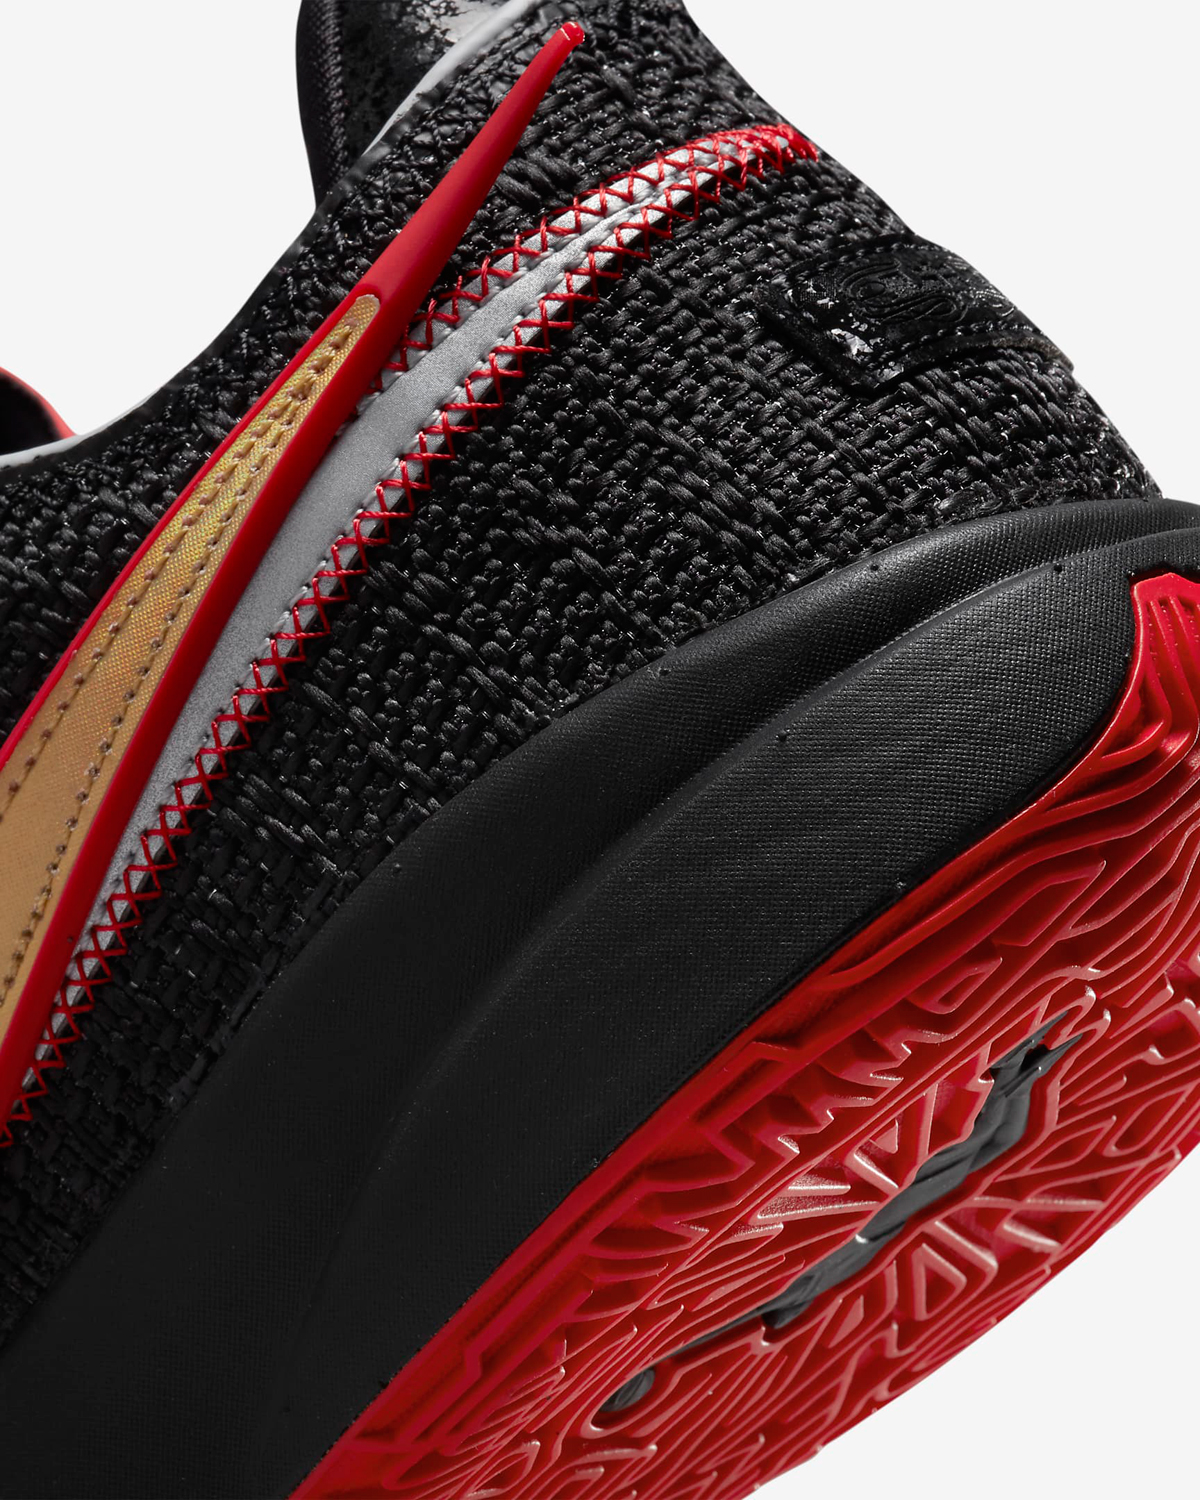 Nike-LeBron-20-Trinity-Bred-Release-Date-8